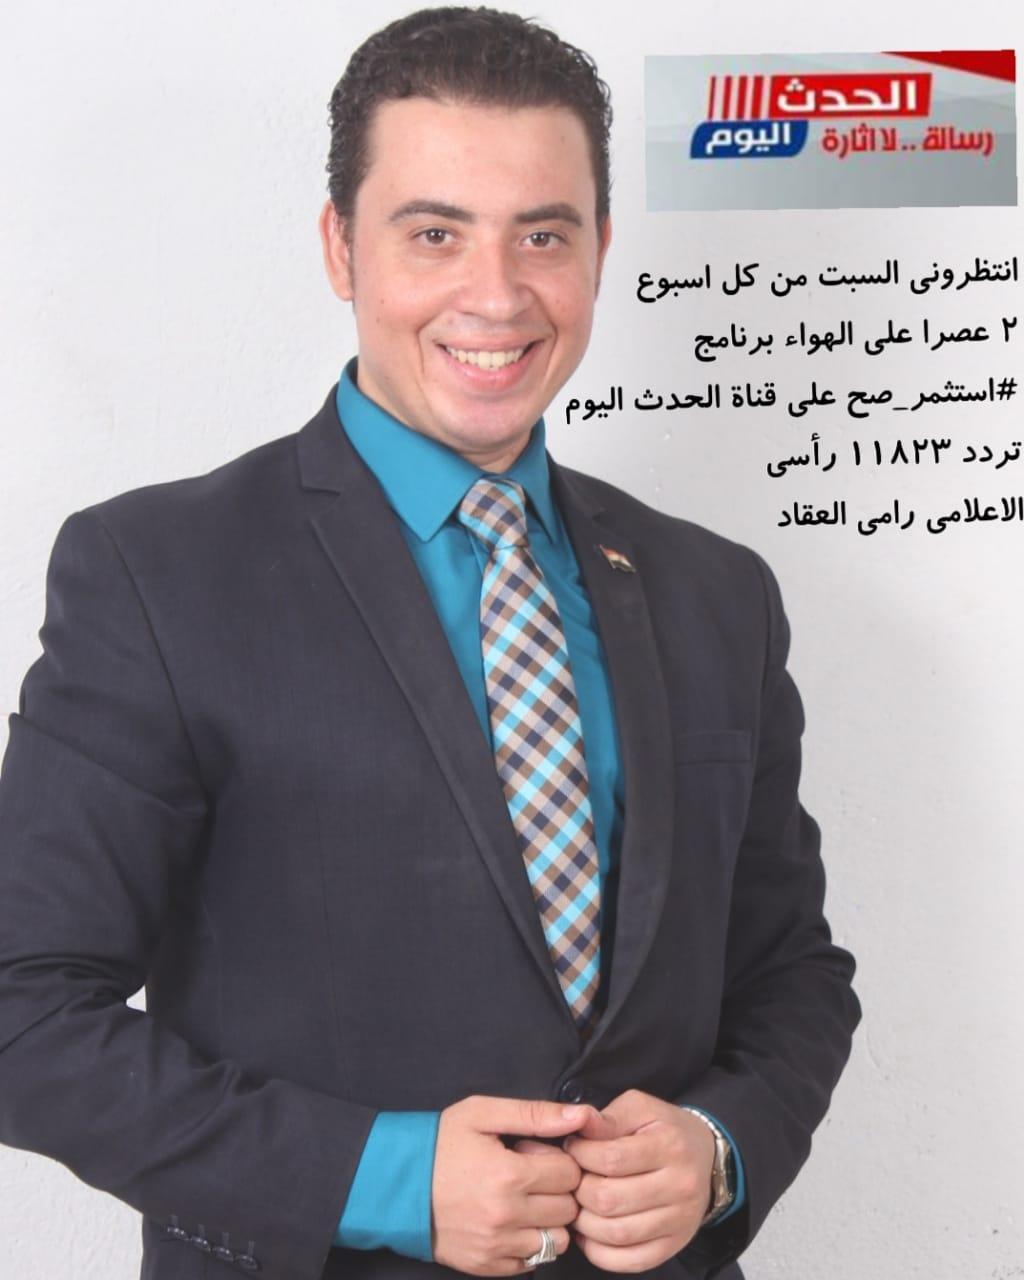   اليوم.. انطلاق برنامج «استثمر صح» مع رامى العقاد على قناة الحدث